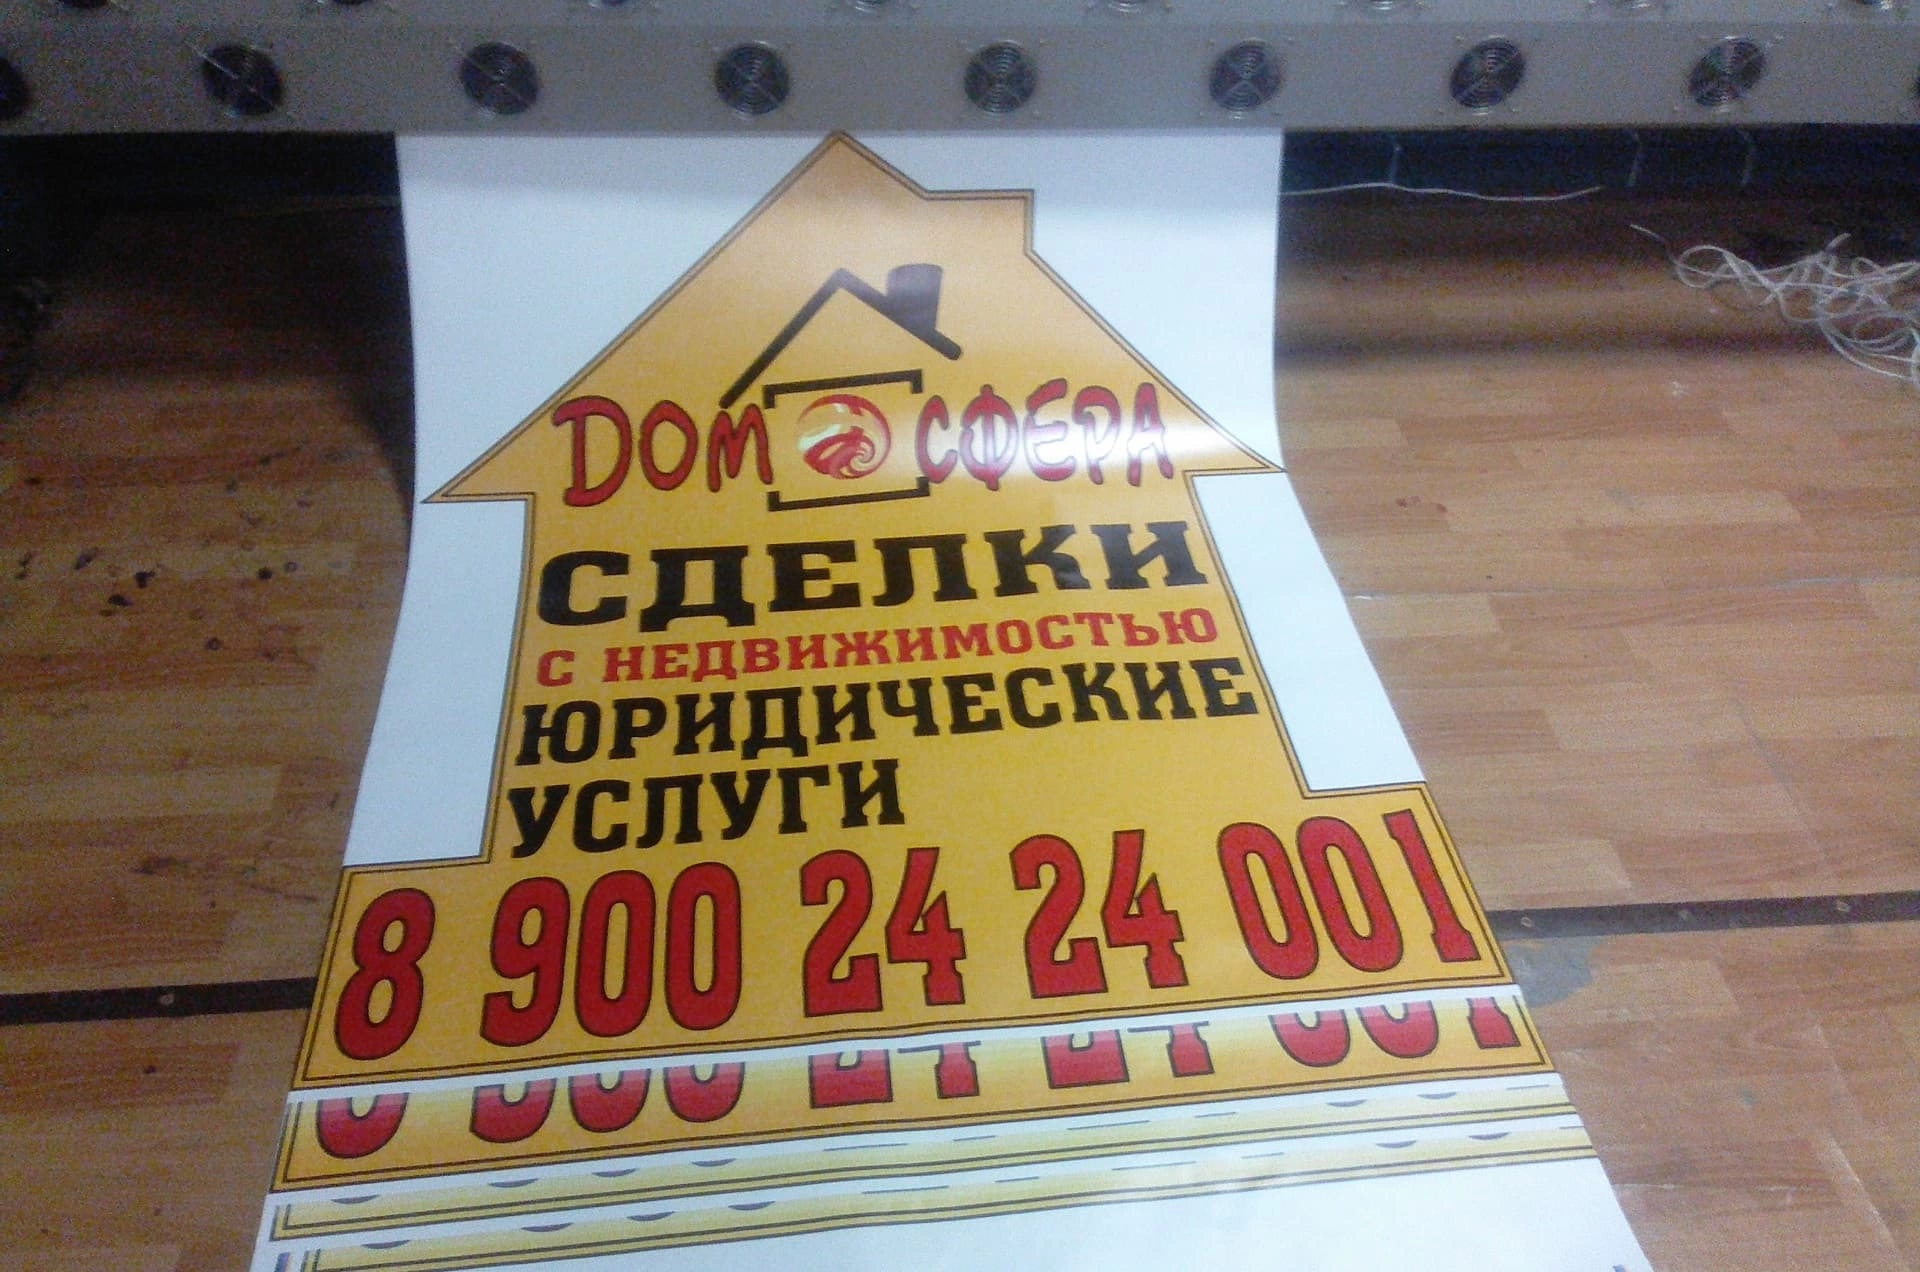 Широкоформатная печать - рекламно-производственная компания Quickprint г. Краснодар.